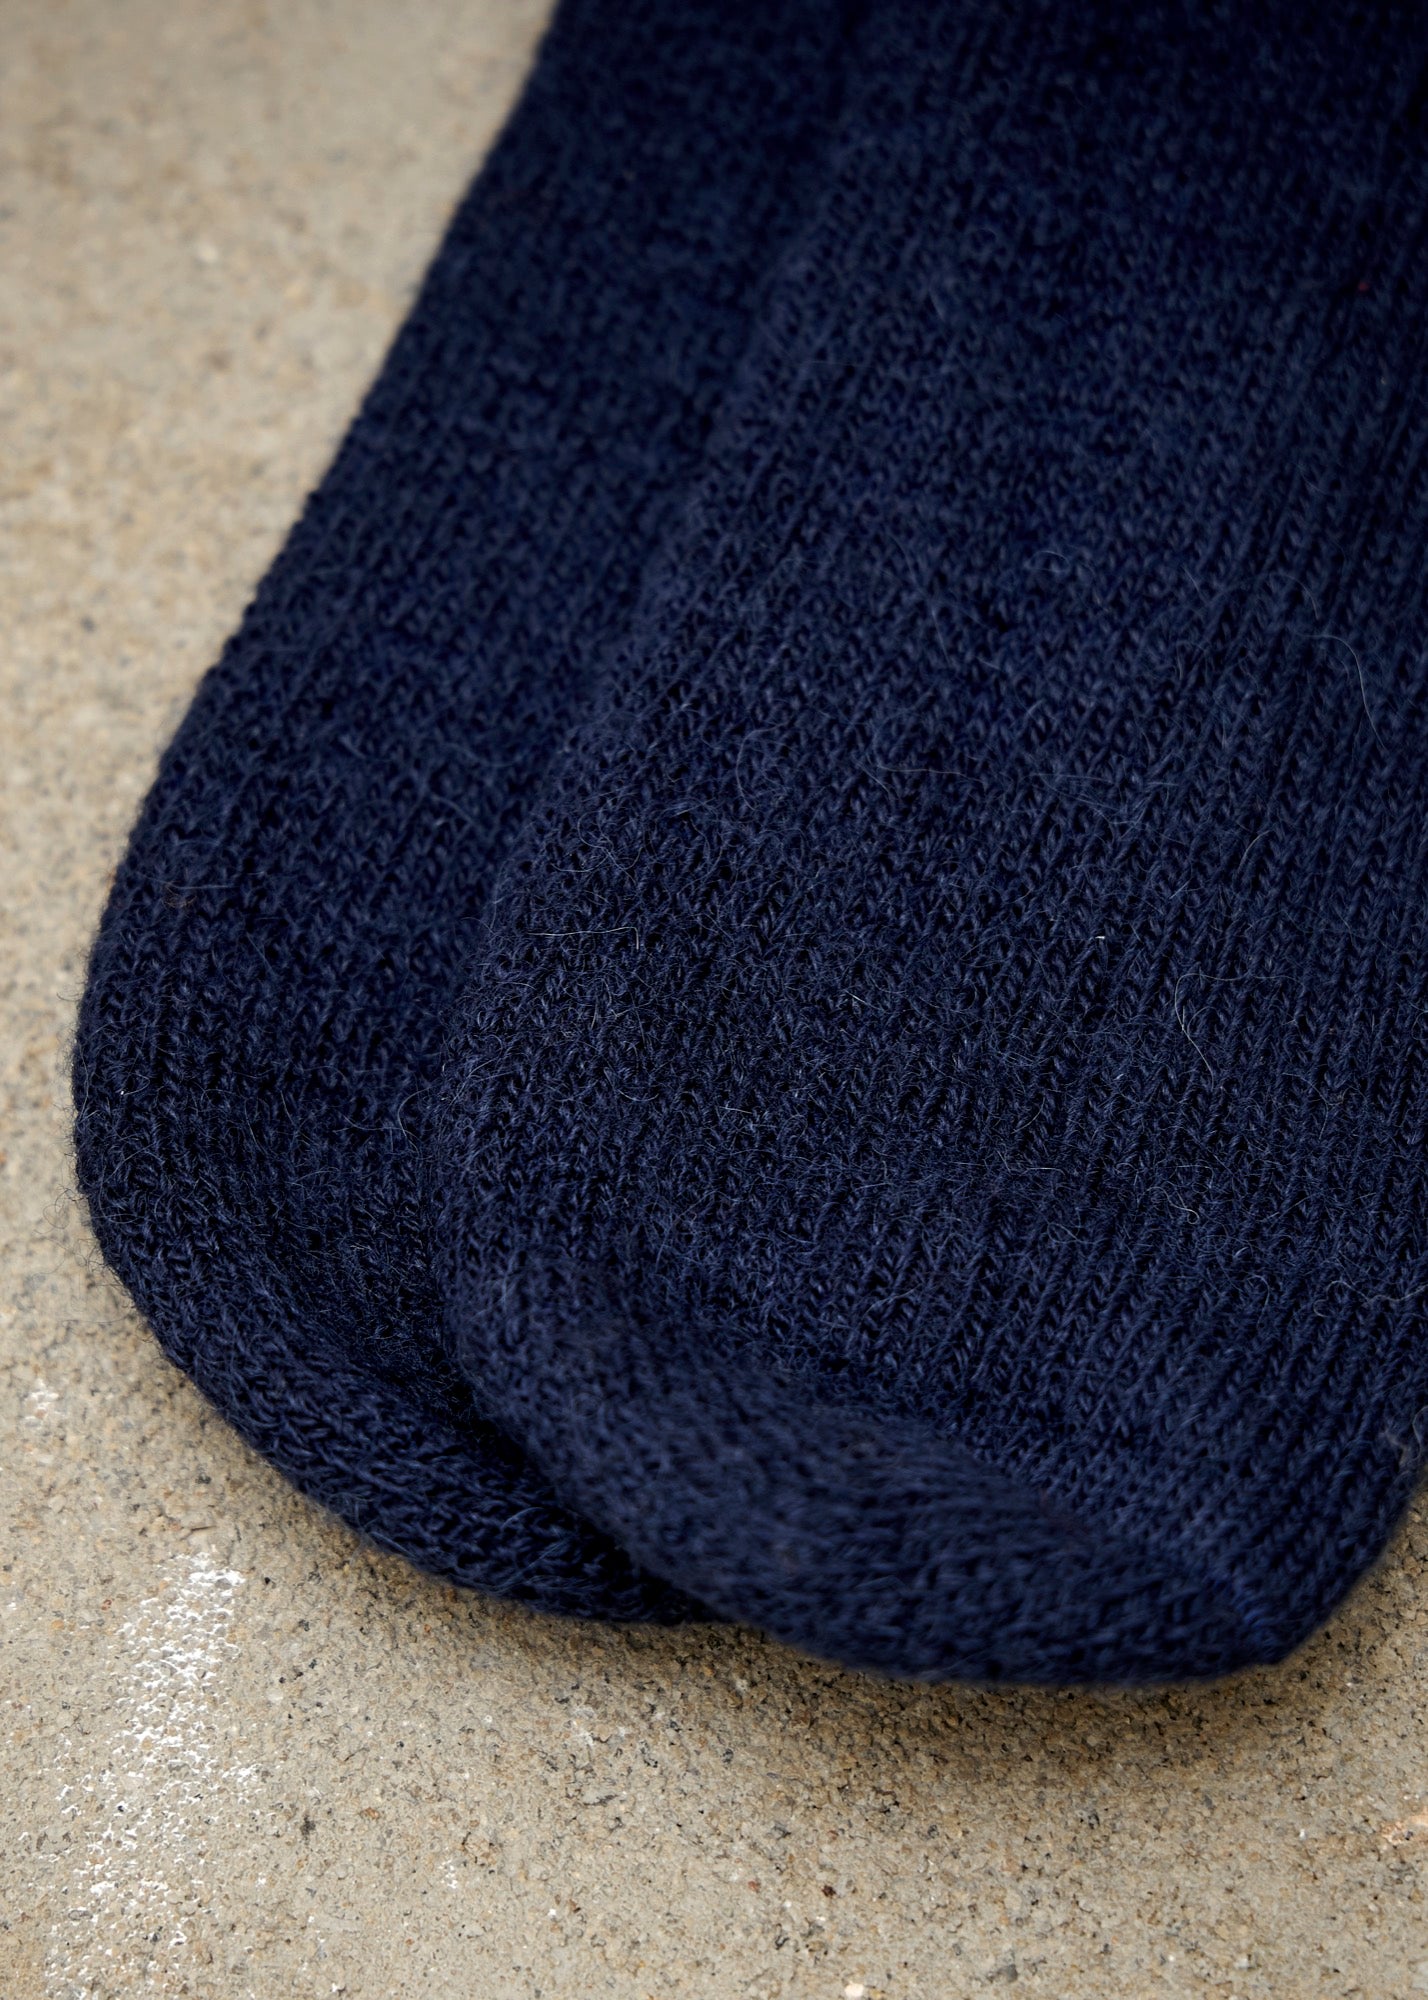 Working & Walking Socks - Navy Alpaca Wool